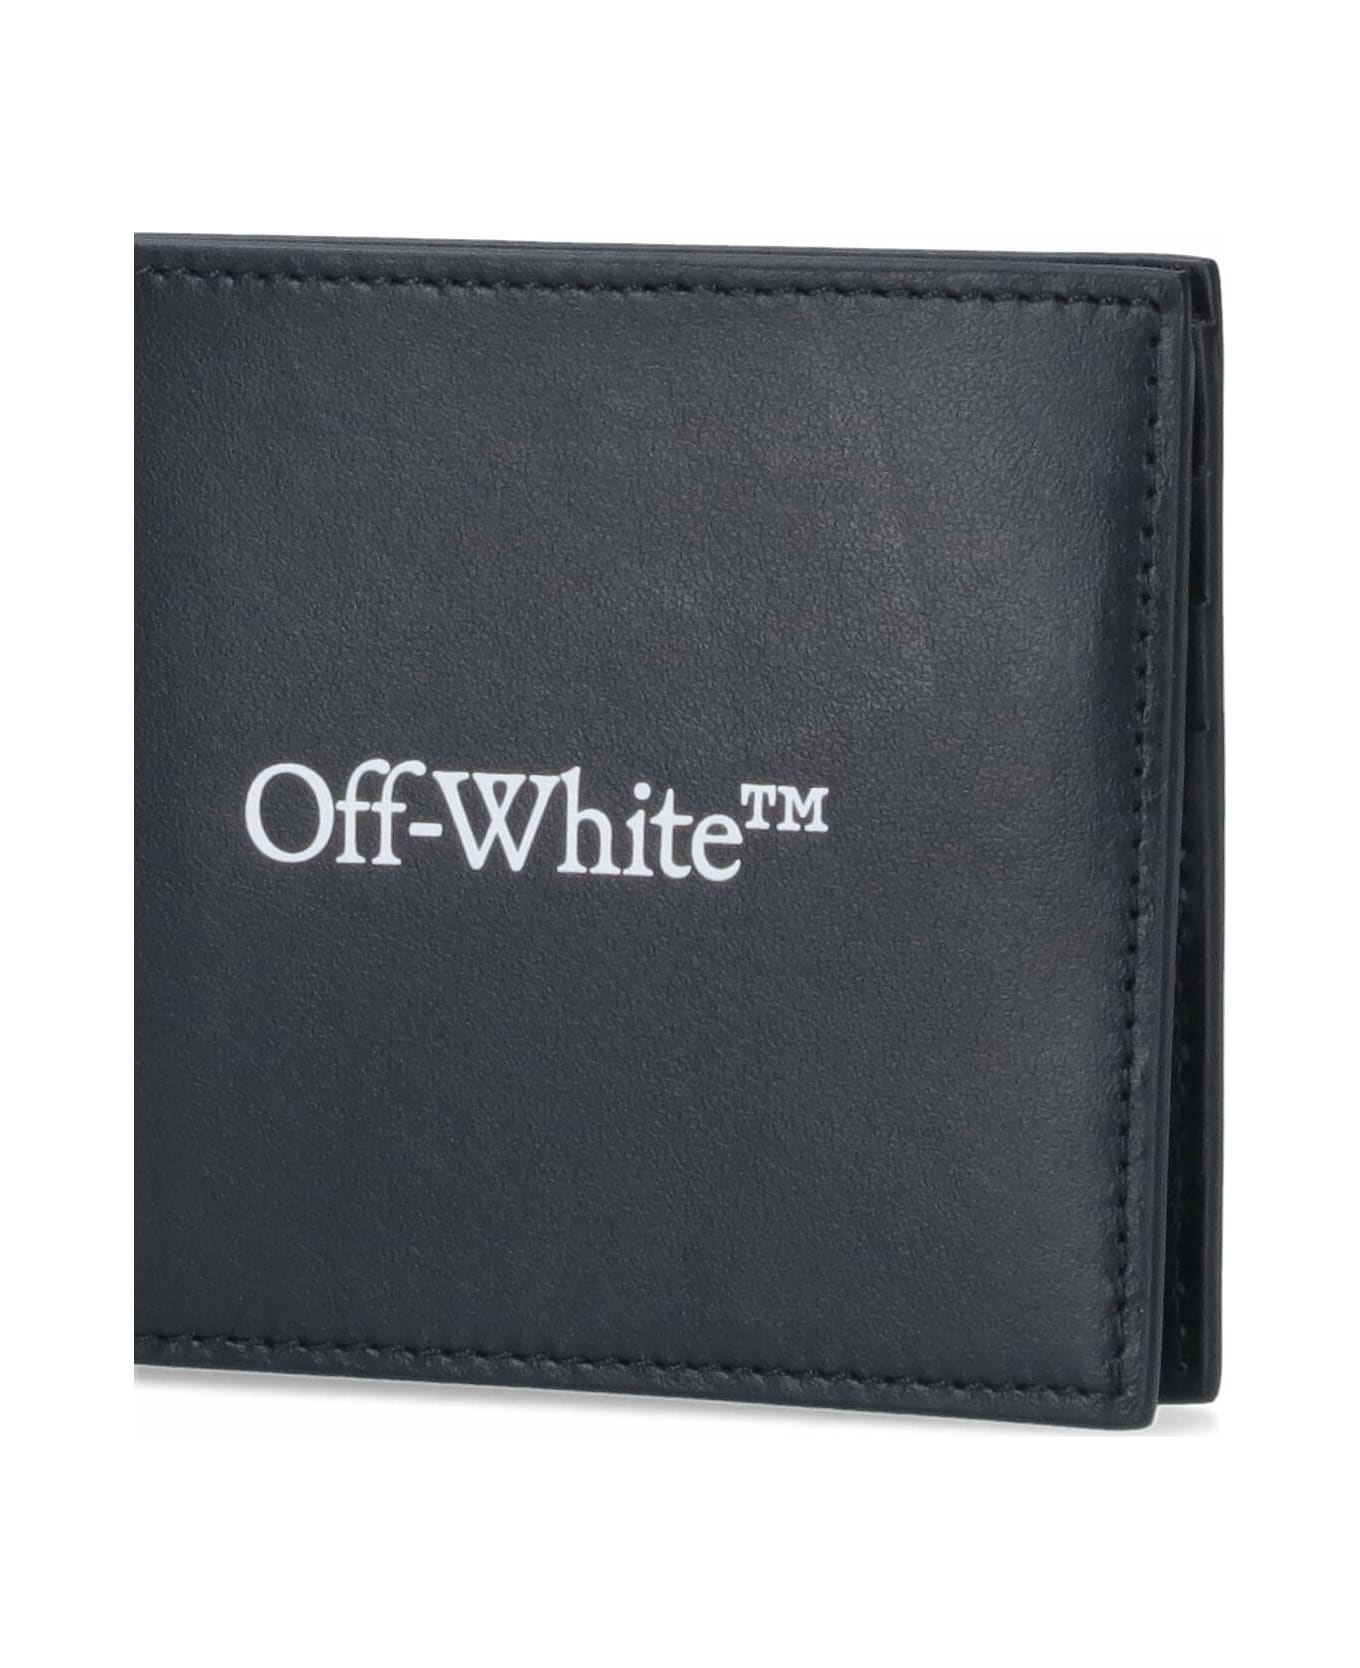 Off-White Bi-fold Wallet - Black 財布